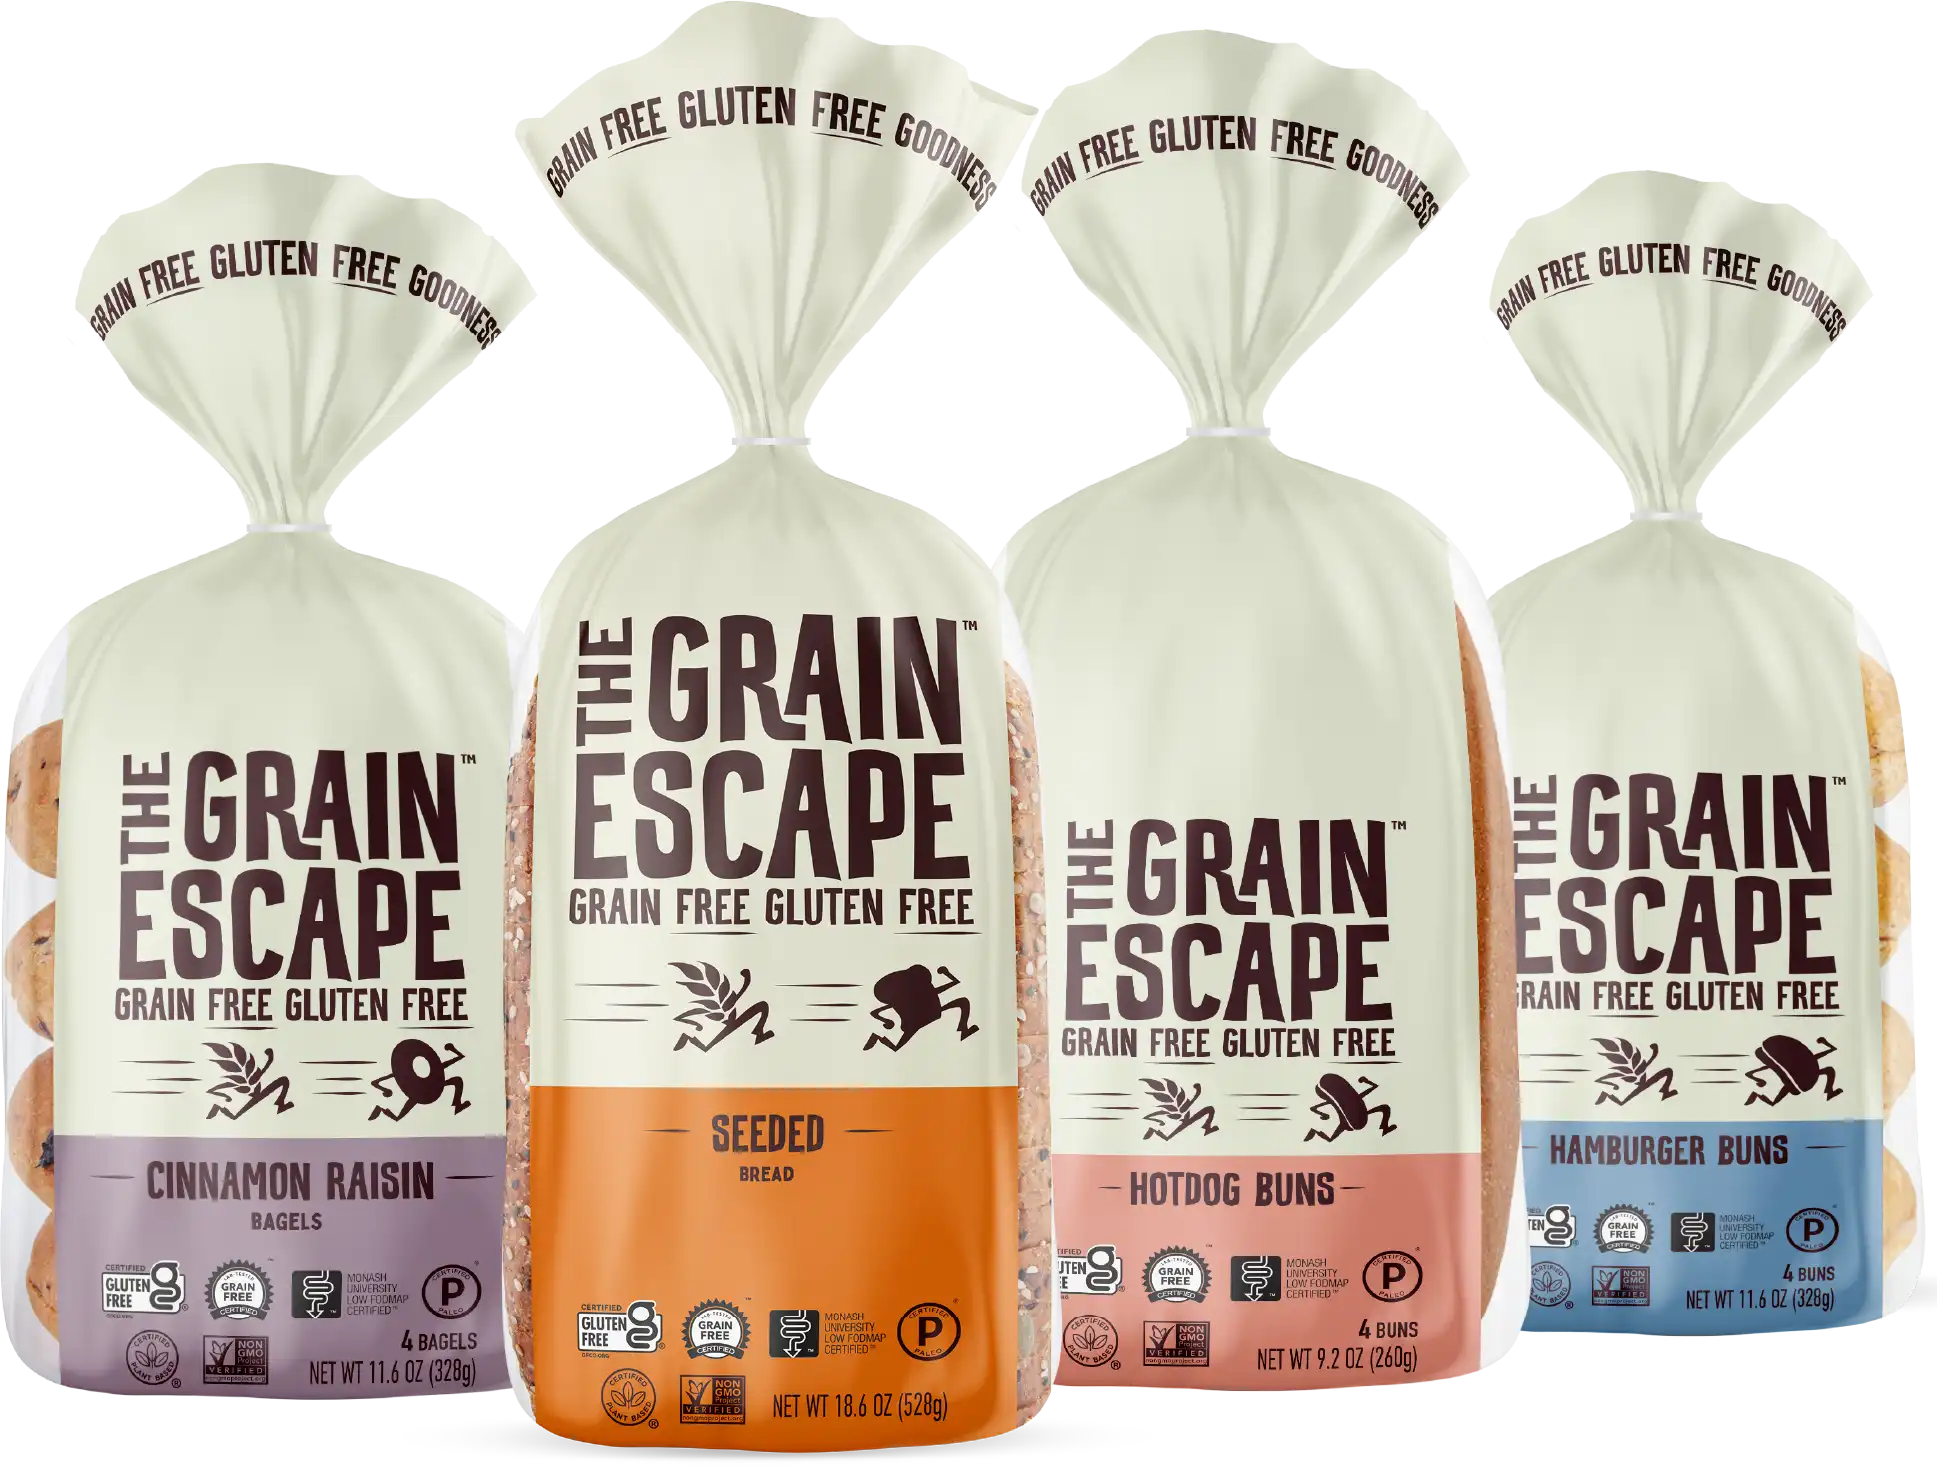 The Grain Escape Products